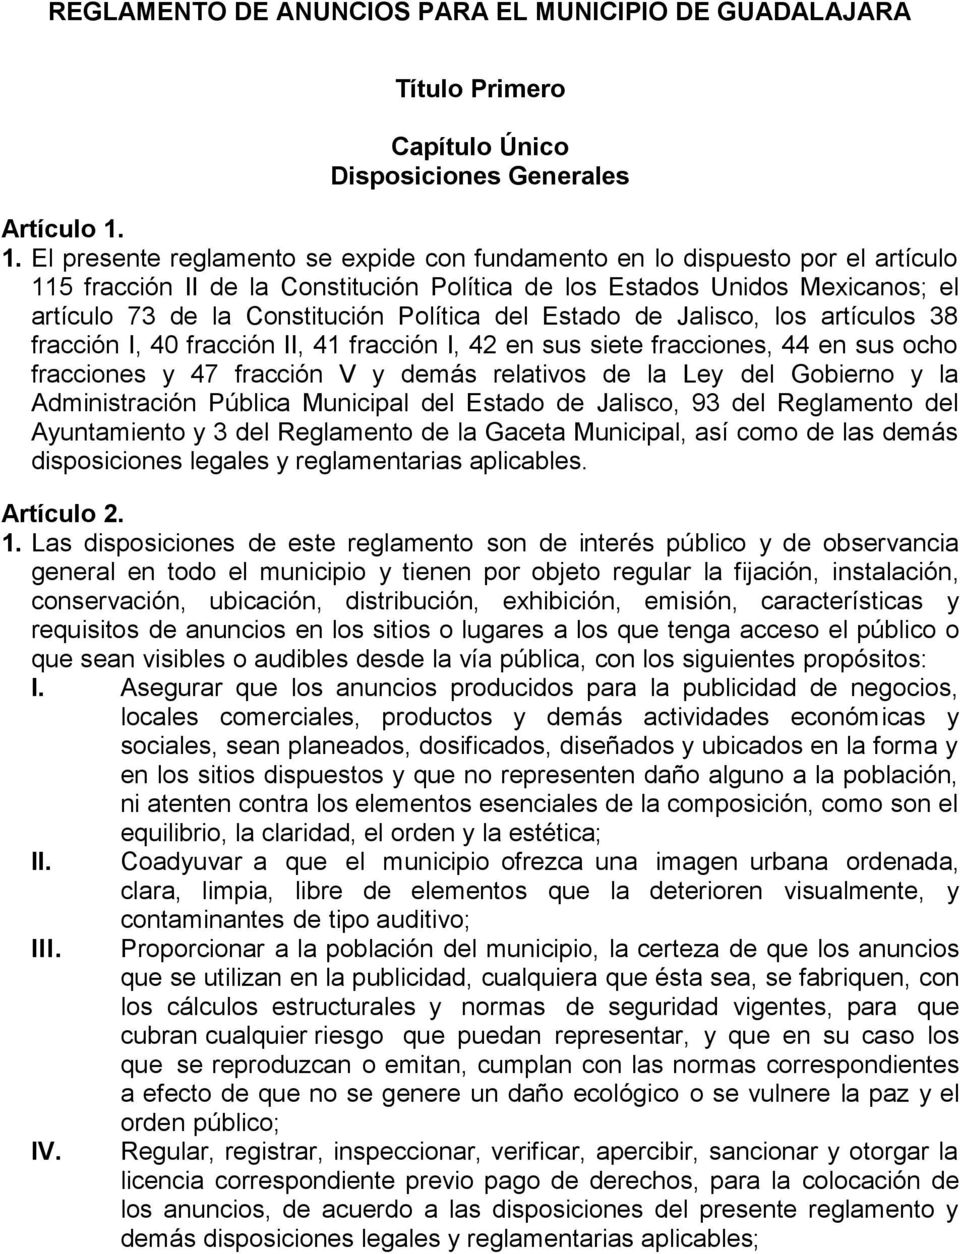 Política del Estado de Jalisco, los artículos 38 fracción I, 40 fracción II, 41 fracción I, 42 en sus siete fracciones, 44 en sus ocho fracciones y 47 fracción V y demás relativos de la Ley del